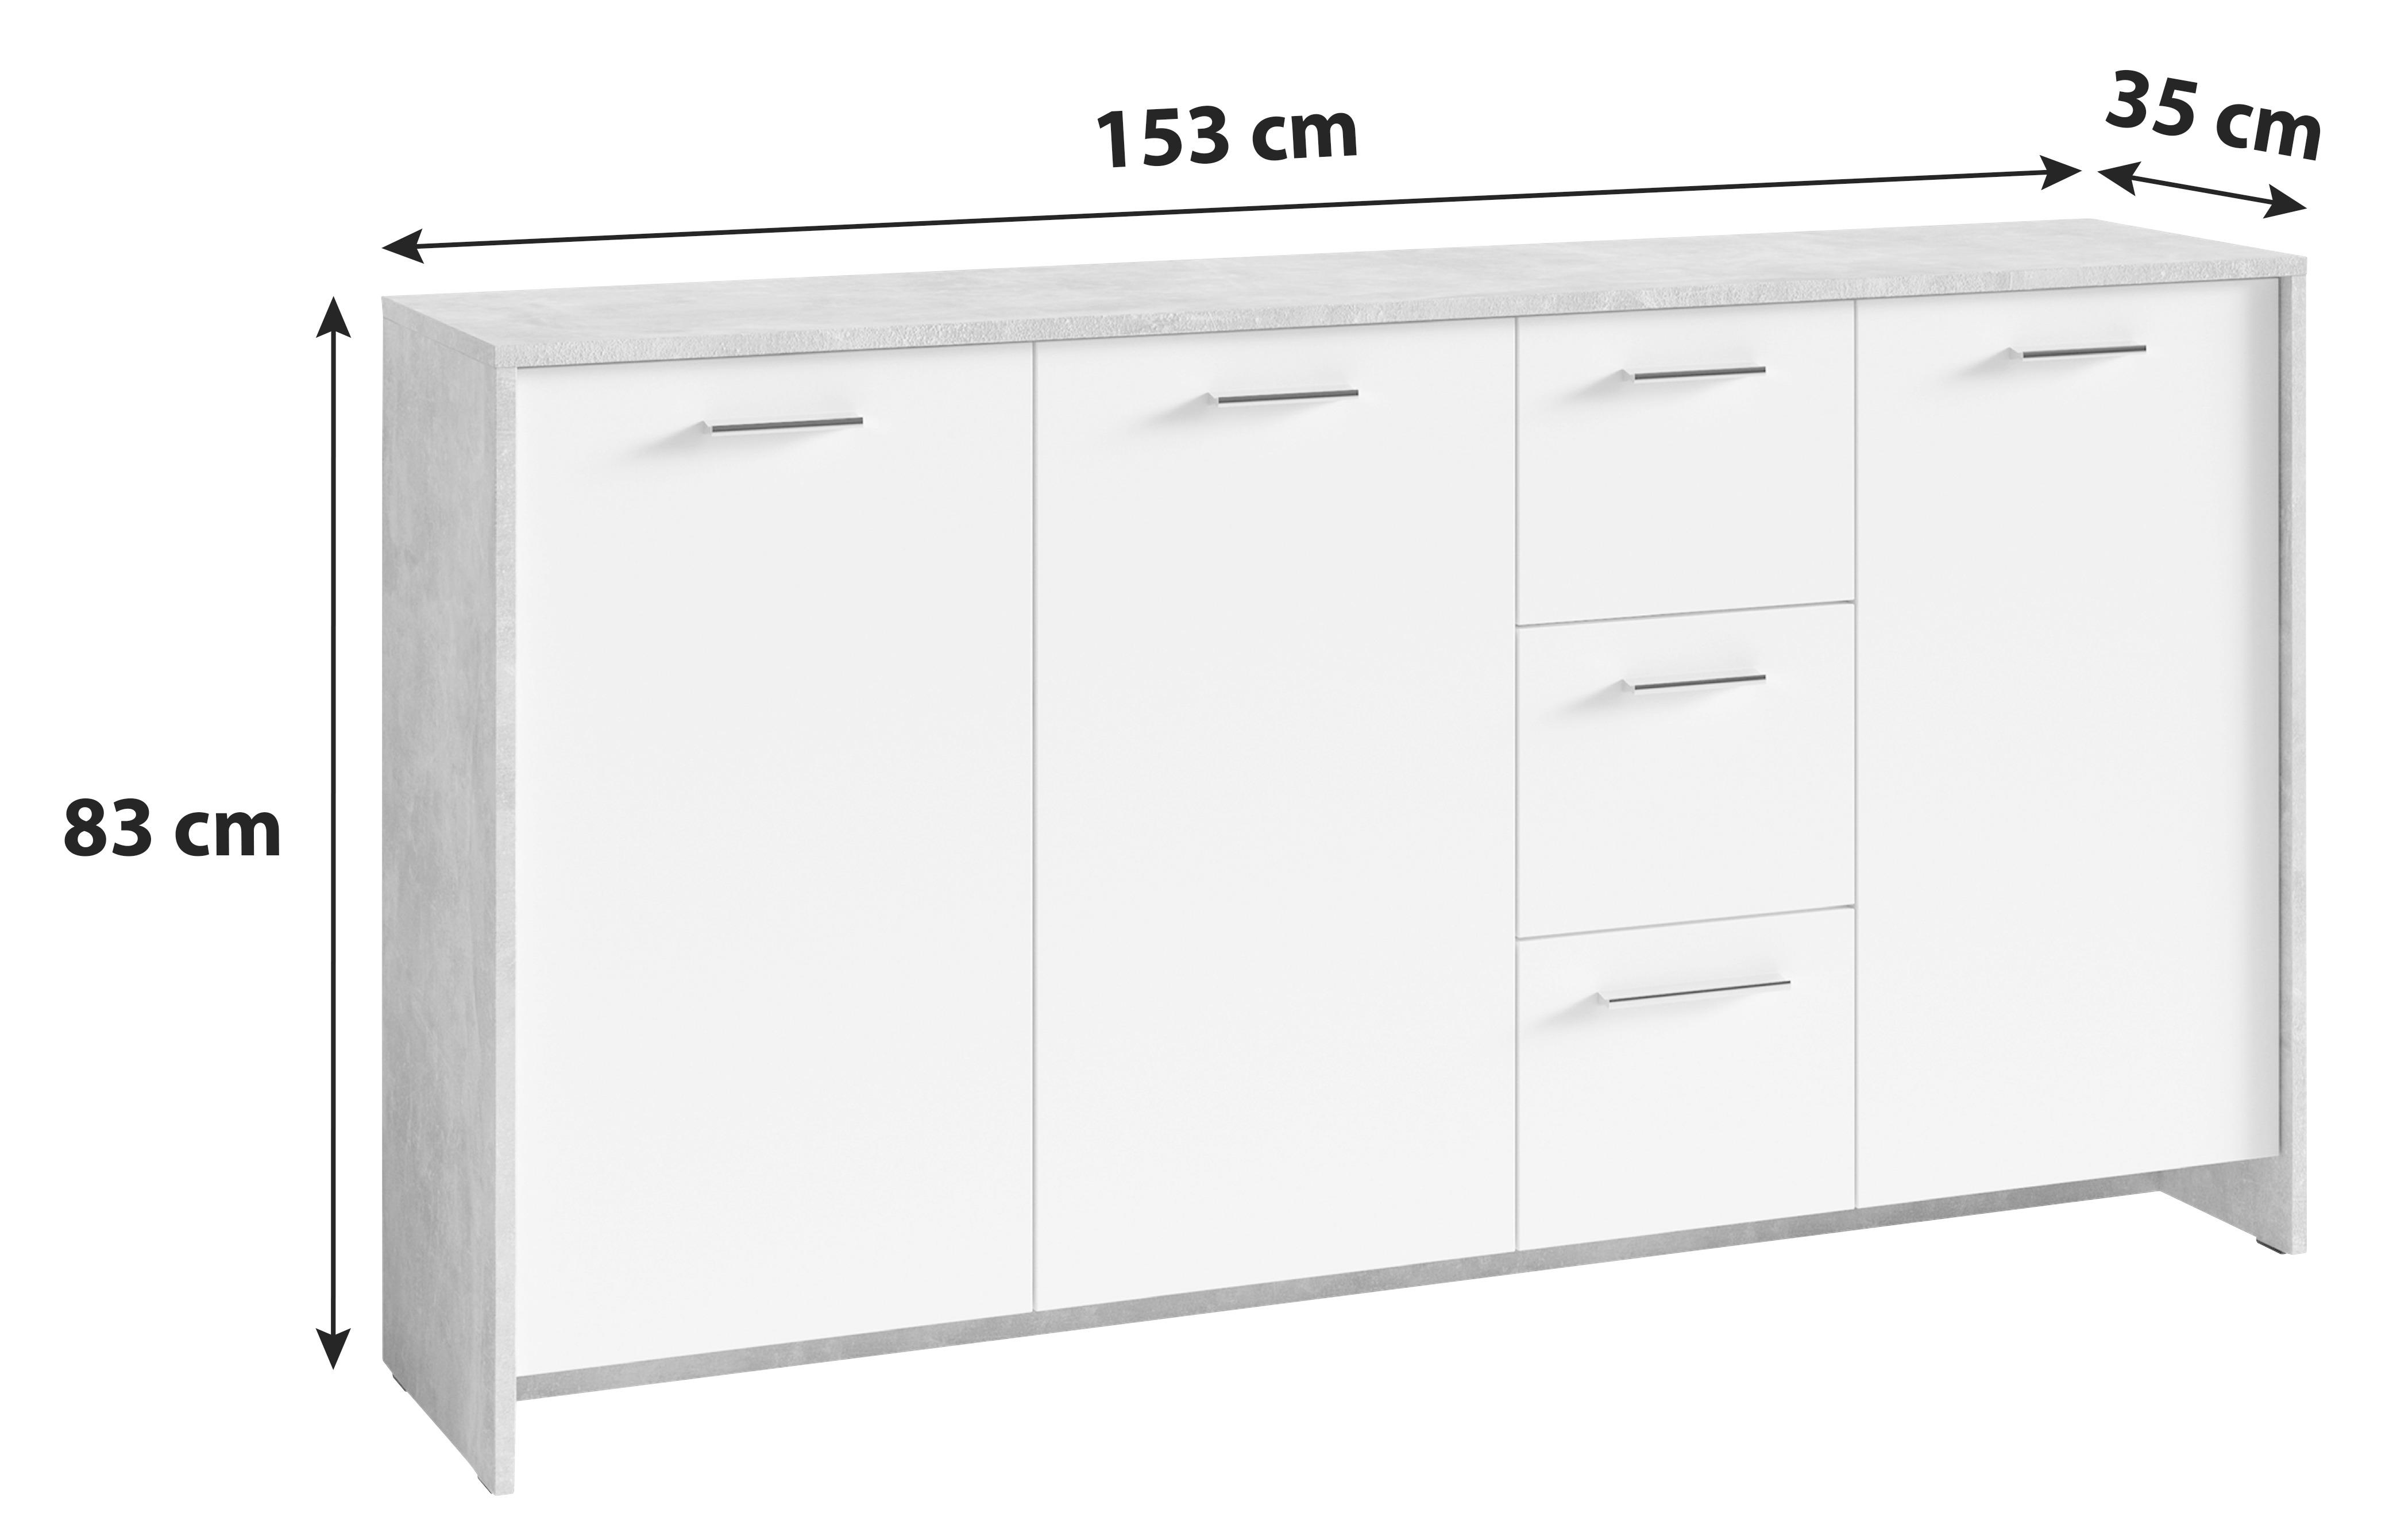 Sideboard B: 153 cm Benno, Grau/Weiß - Weiß/Grau, KONVENTIONELL, Holzwerkstoff (153/83/35cm) - MID.YOU